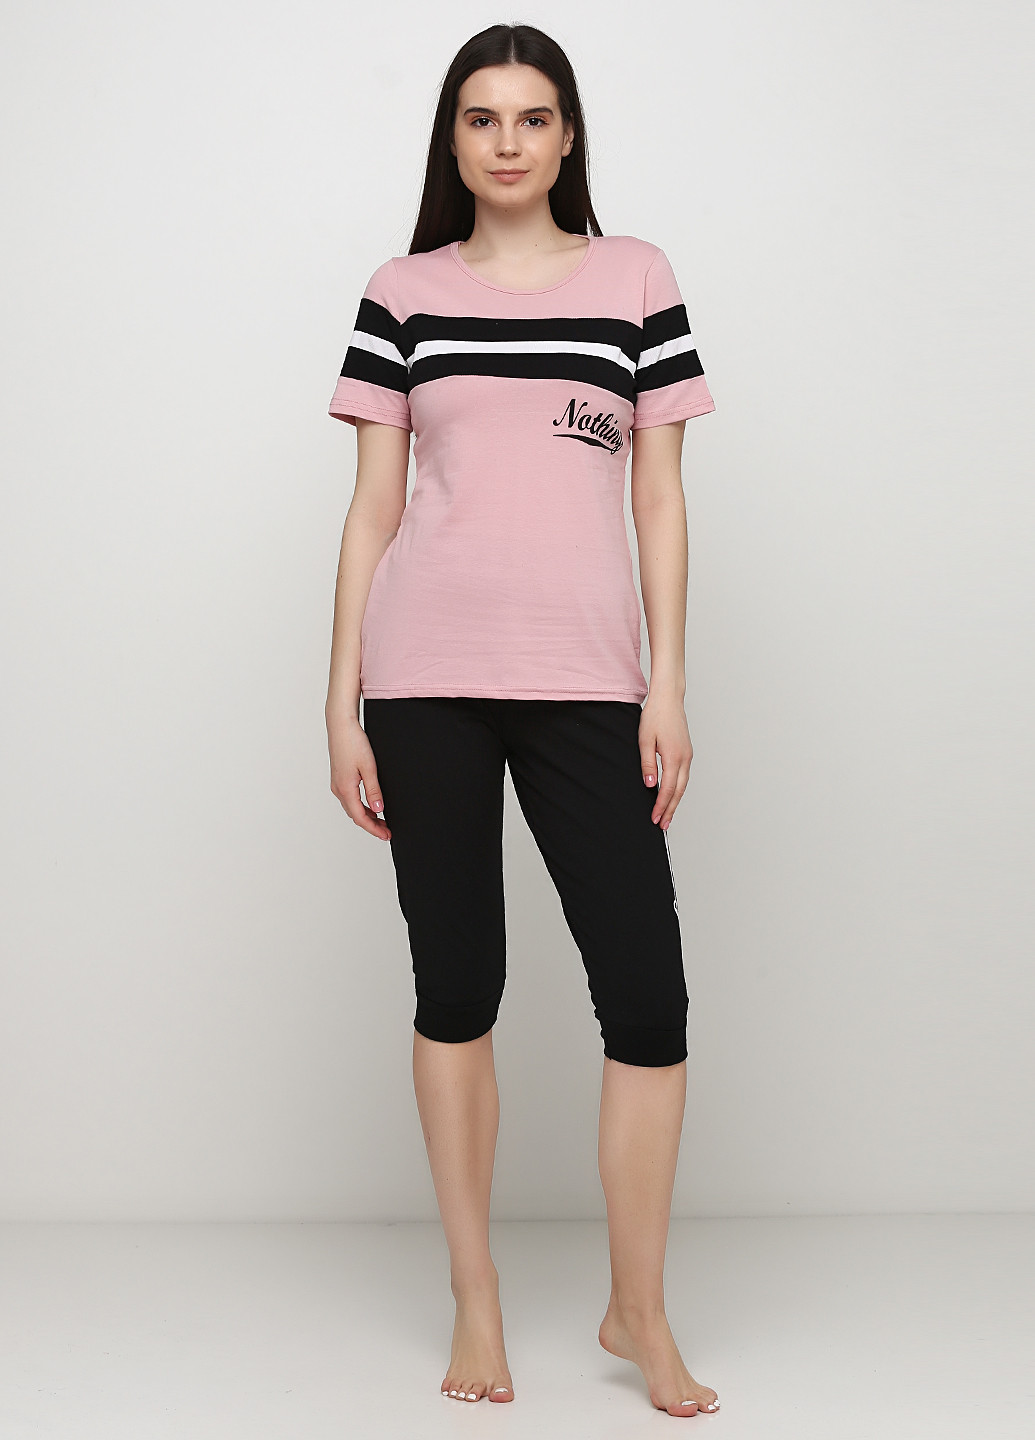 Розовая всесезон пижама (футболка, бриджи) футболка + бриджи Sexen